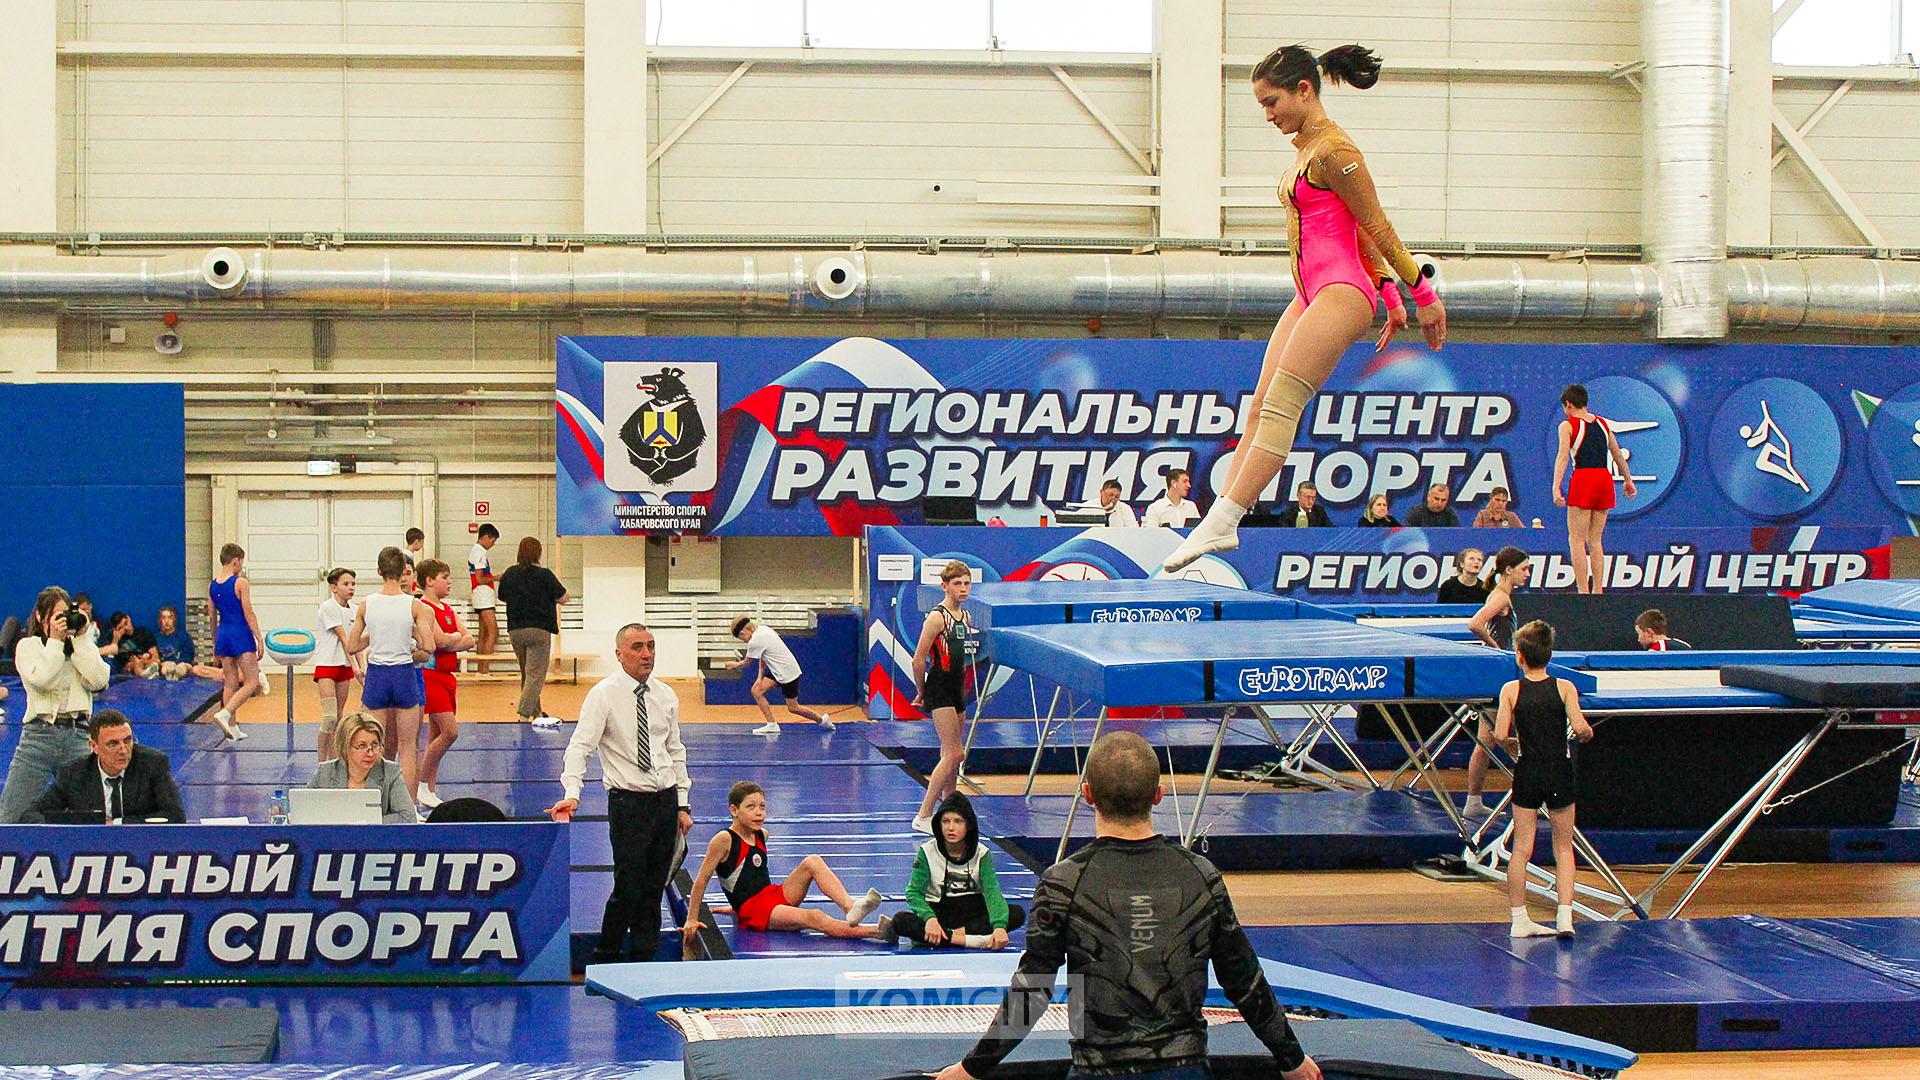 Комсомольчане традиционно вошли в число победителей дальневосточных соревнований по прыжкам на батуте